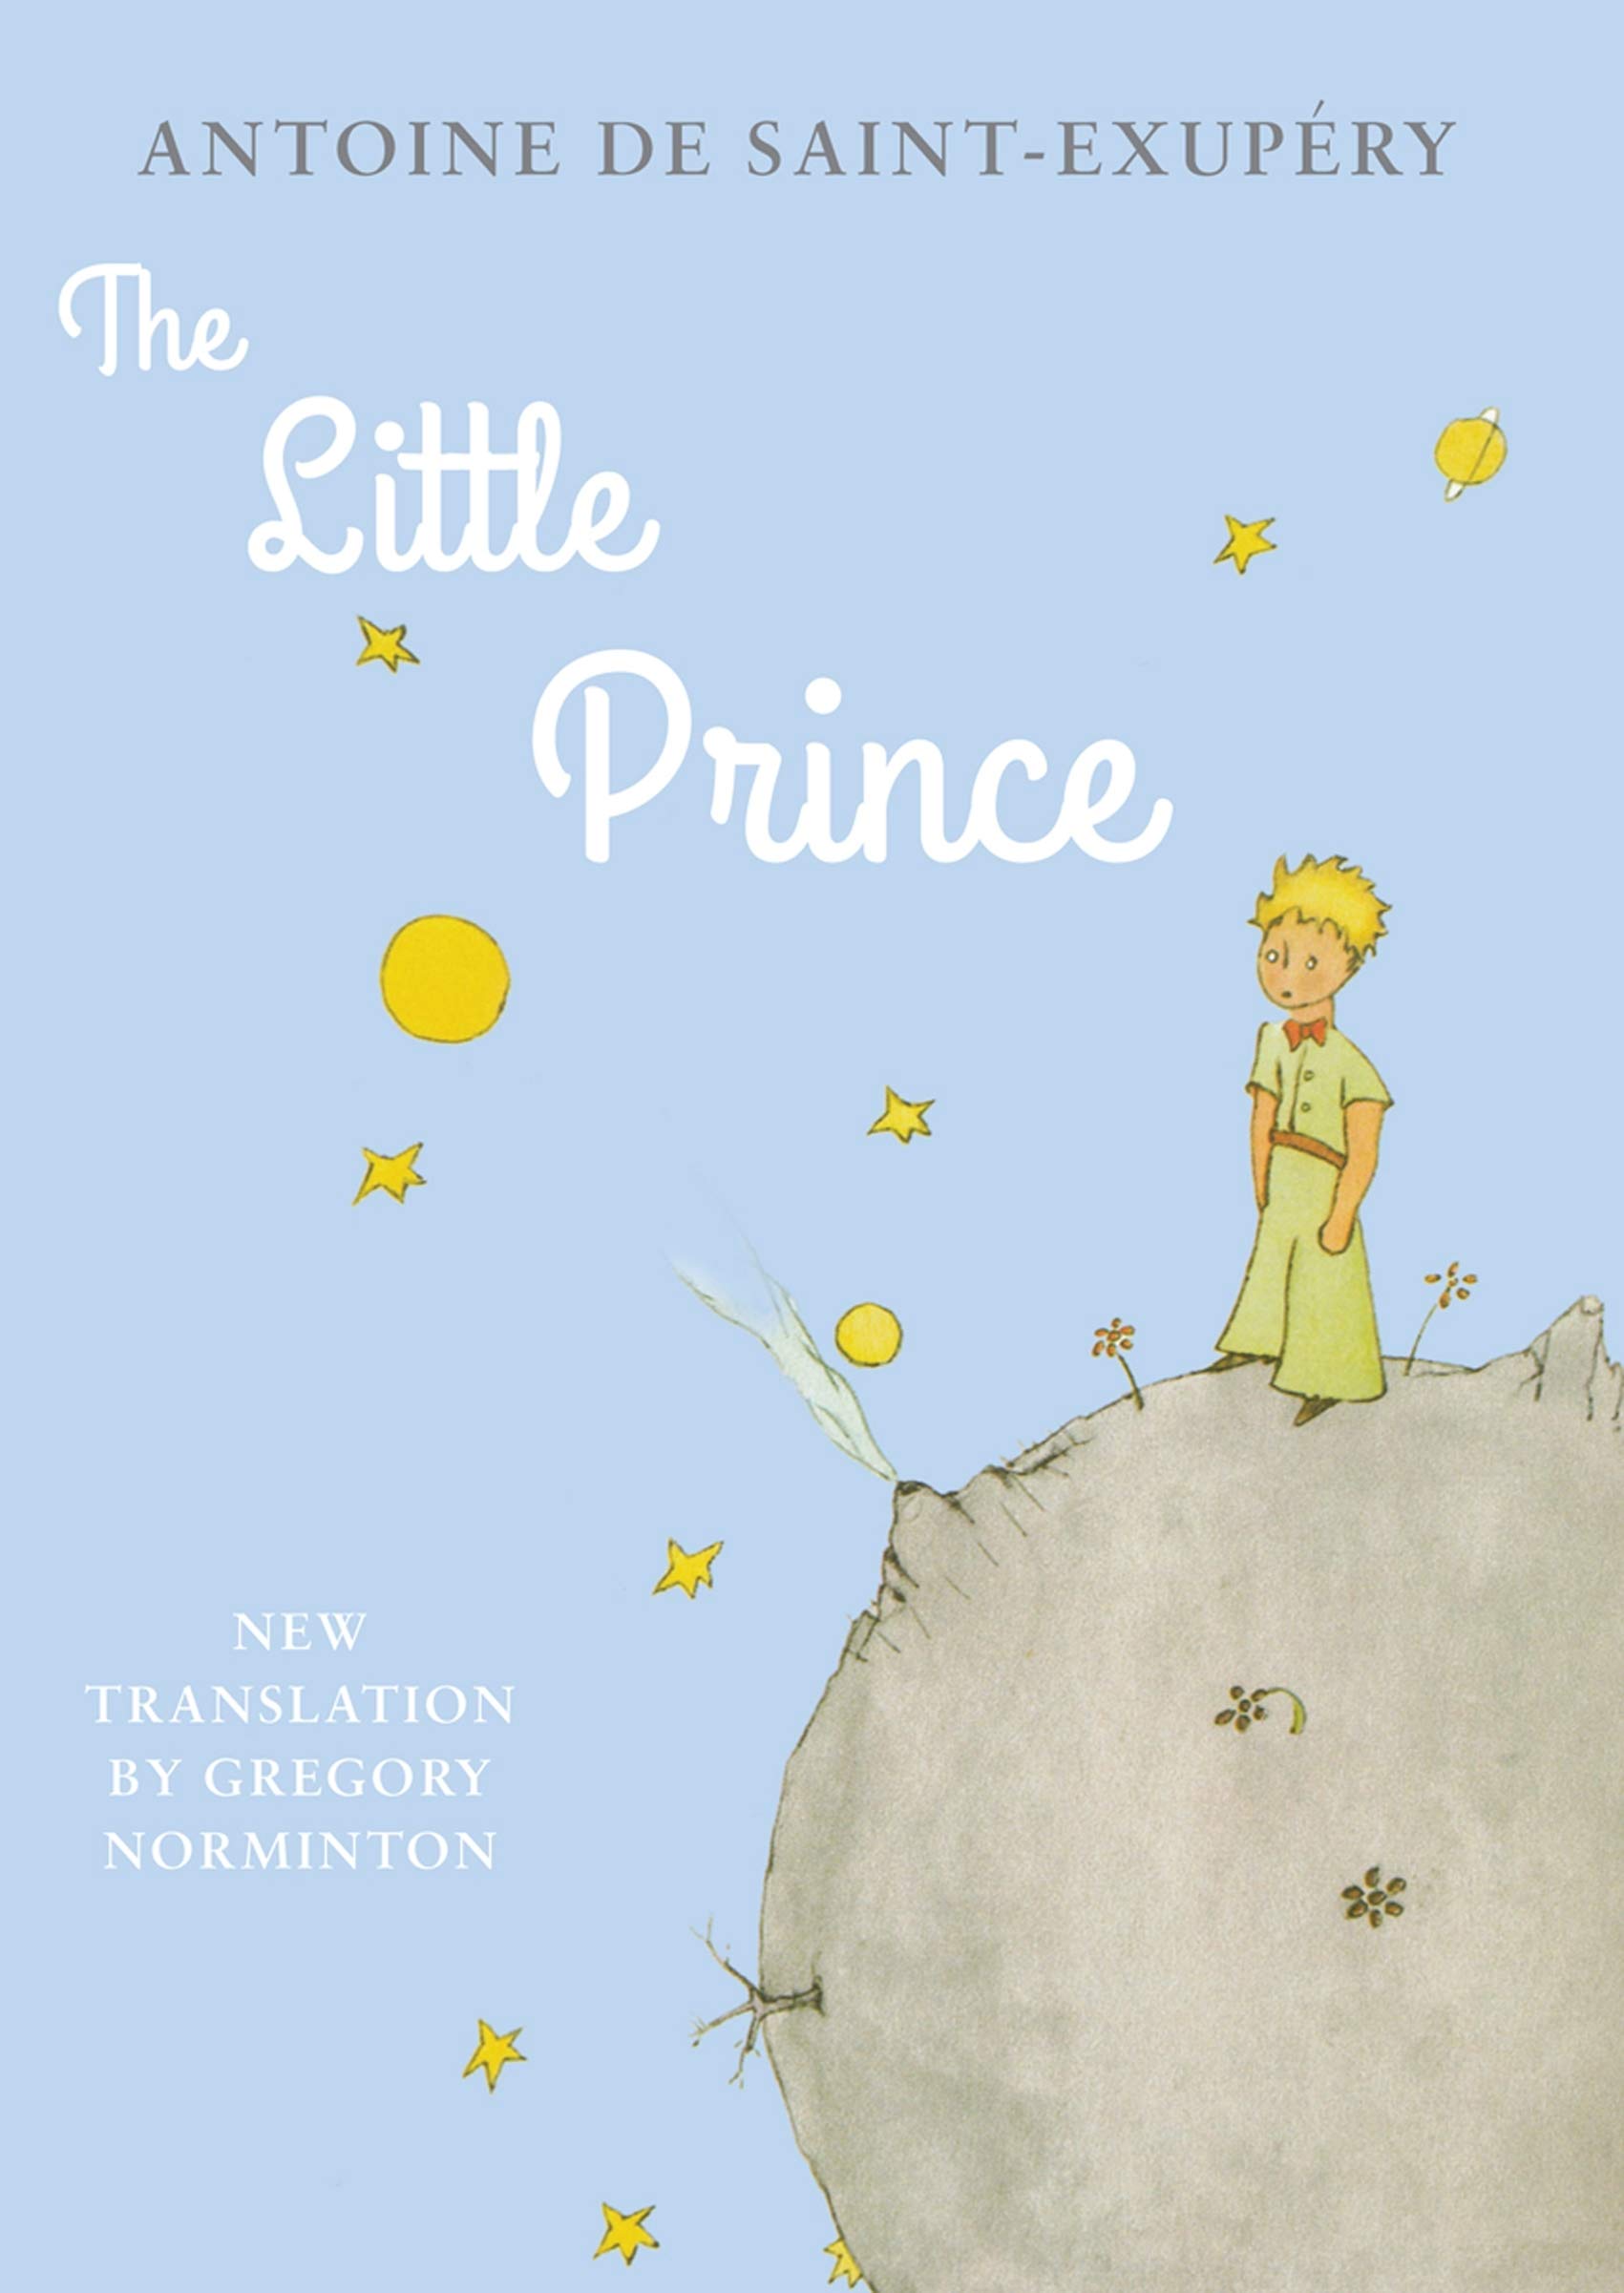 The Little Prince | Antoine de Saint-Exupery